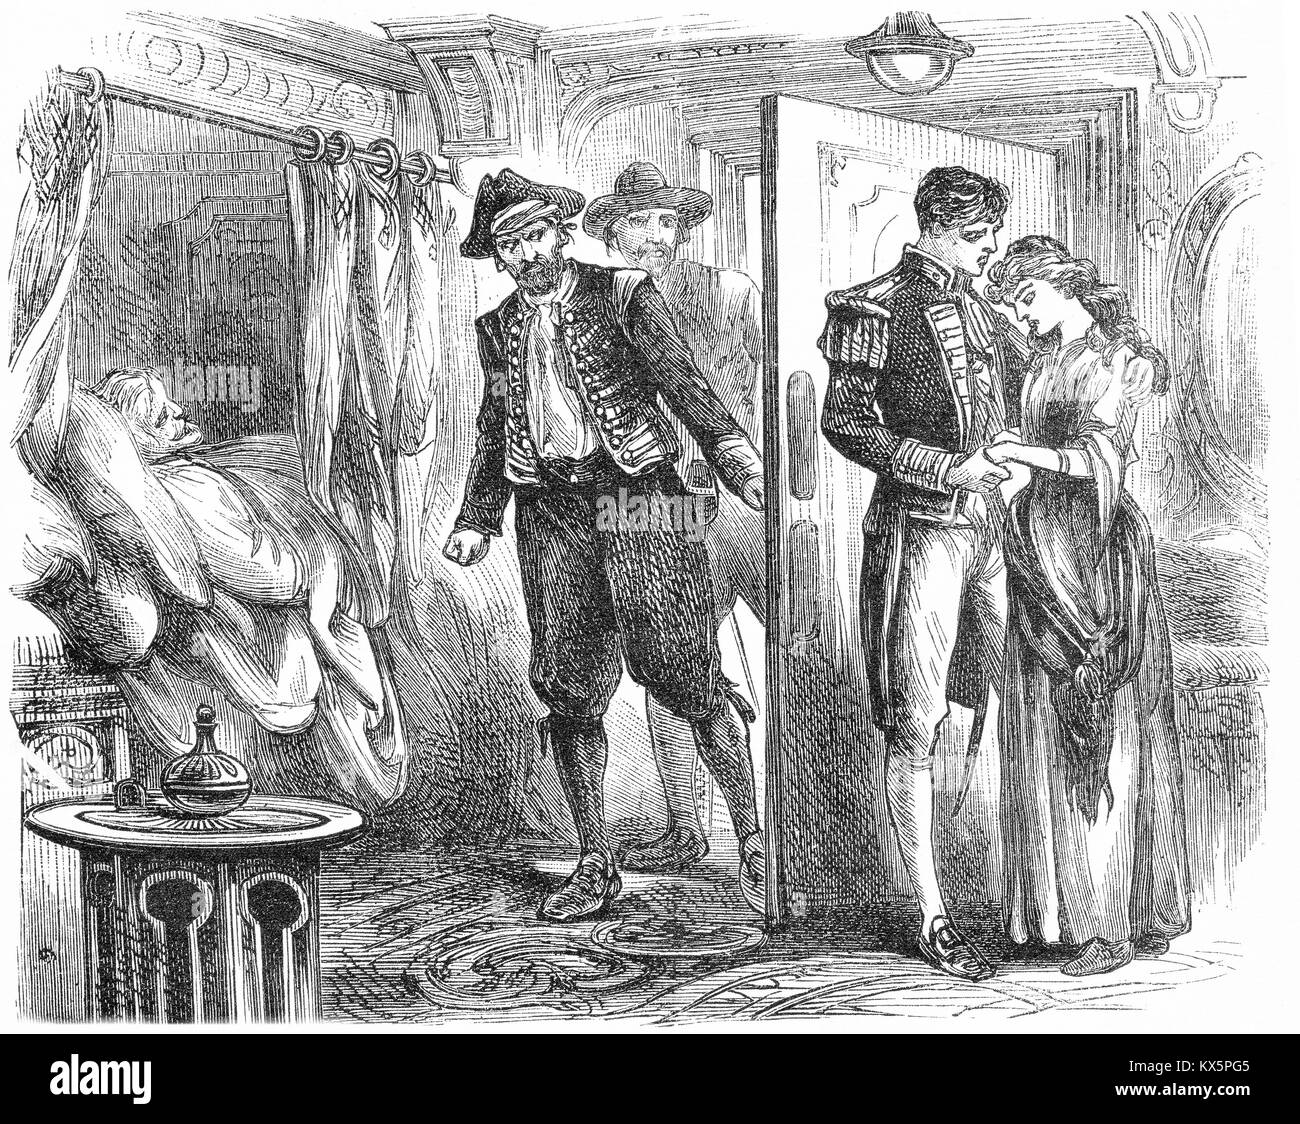 Gravure de deux pirates entrer dans une cabine du navire où un jeune